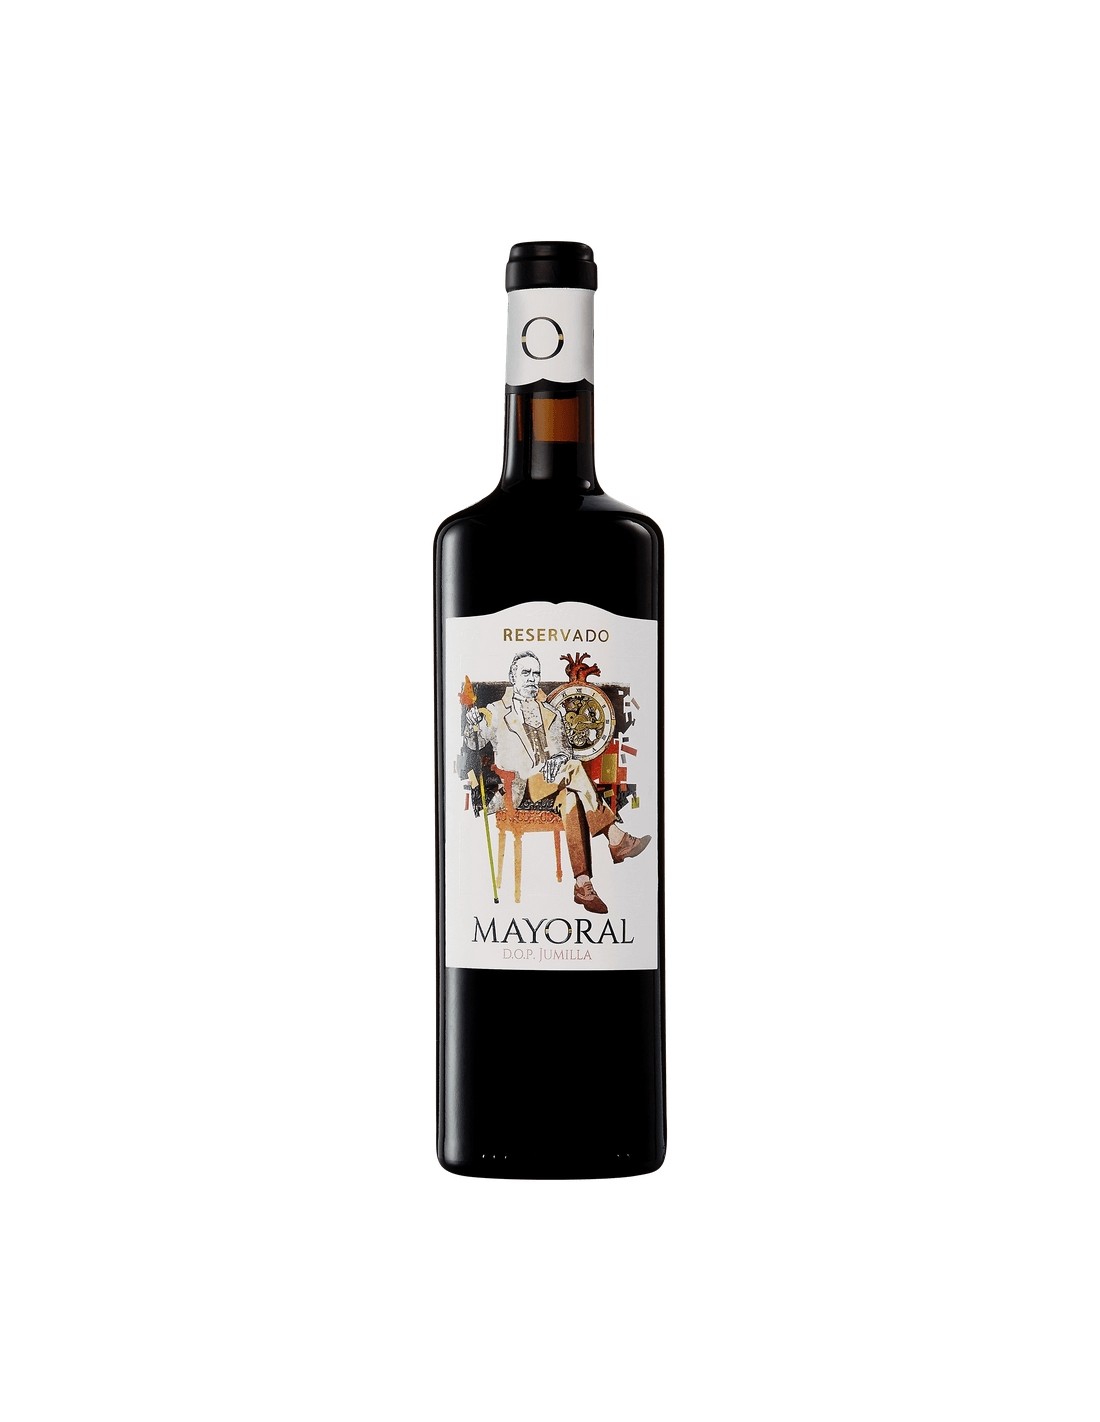 Vin rosu sec, Mayoral Reservado Jumilla, 14.5% alc., 0.75L, Spania alcooldiscount.ro